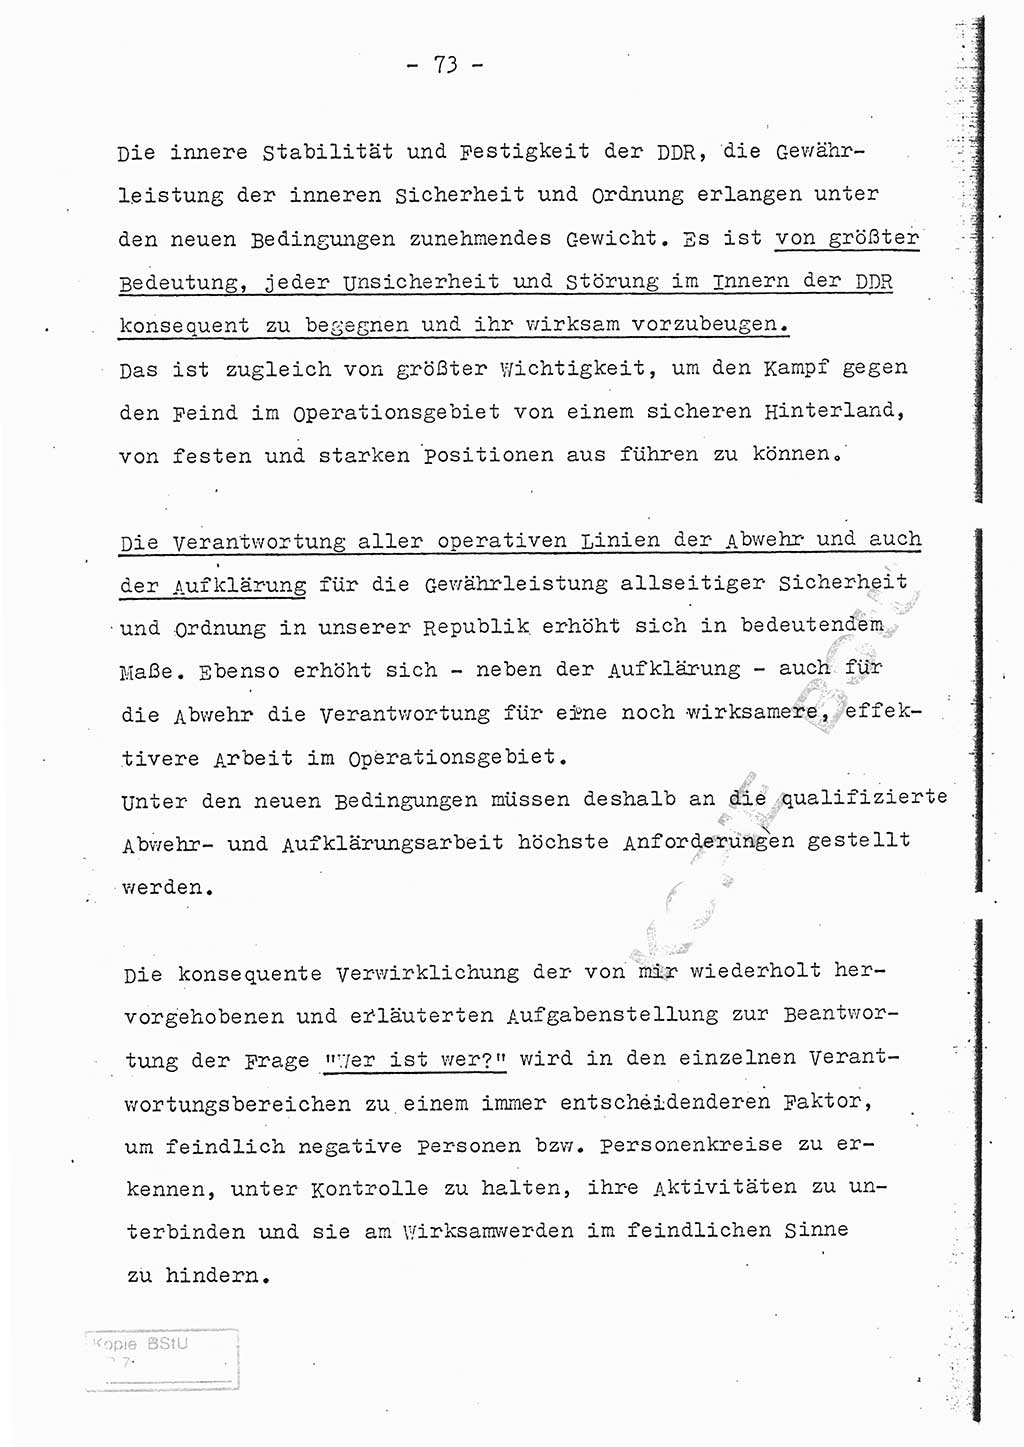 Referat (Entwurf) des Genossen Minister (Generaloberst Erich Mielke) auf der Dienstkonferenz 1972, Ministerium für Staatssicherheit (MfS) [Deutsche Demokratische Republik (DDR)], Der Minister, Geheime Verschlußsache (GVS) 008-150/72, Berlin 25.2.1972, Seite 73 (Ref. Entw. DK MfS DDR Min. GVS 008-150/72 1972, S. 73)